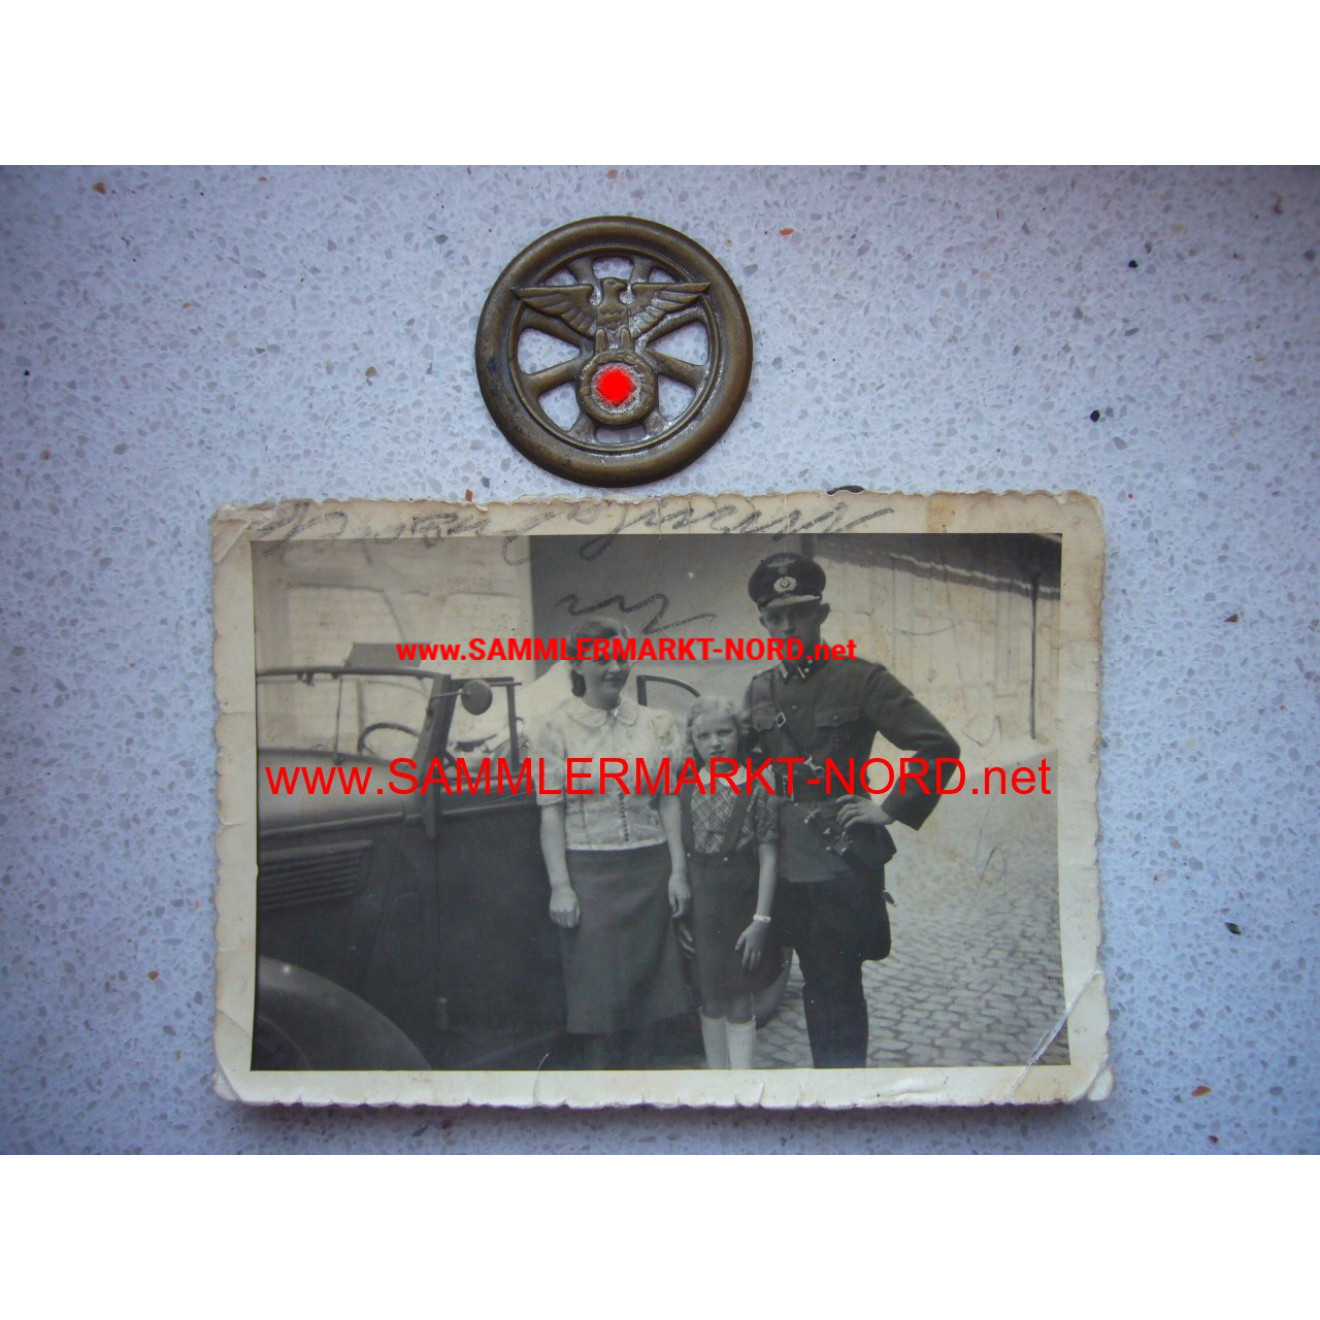 NSKK - motor vehicle arm badge and owner photo